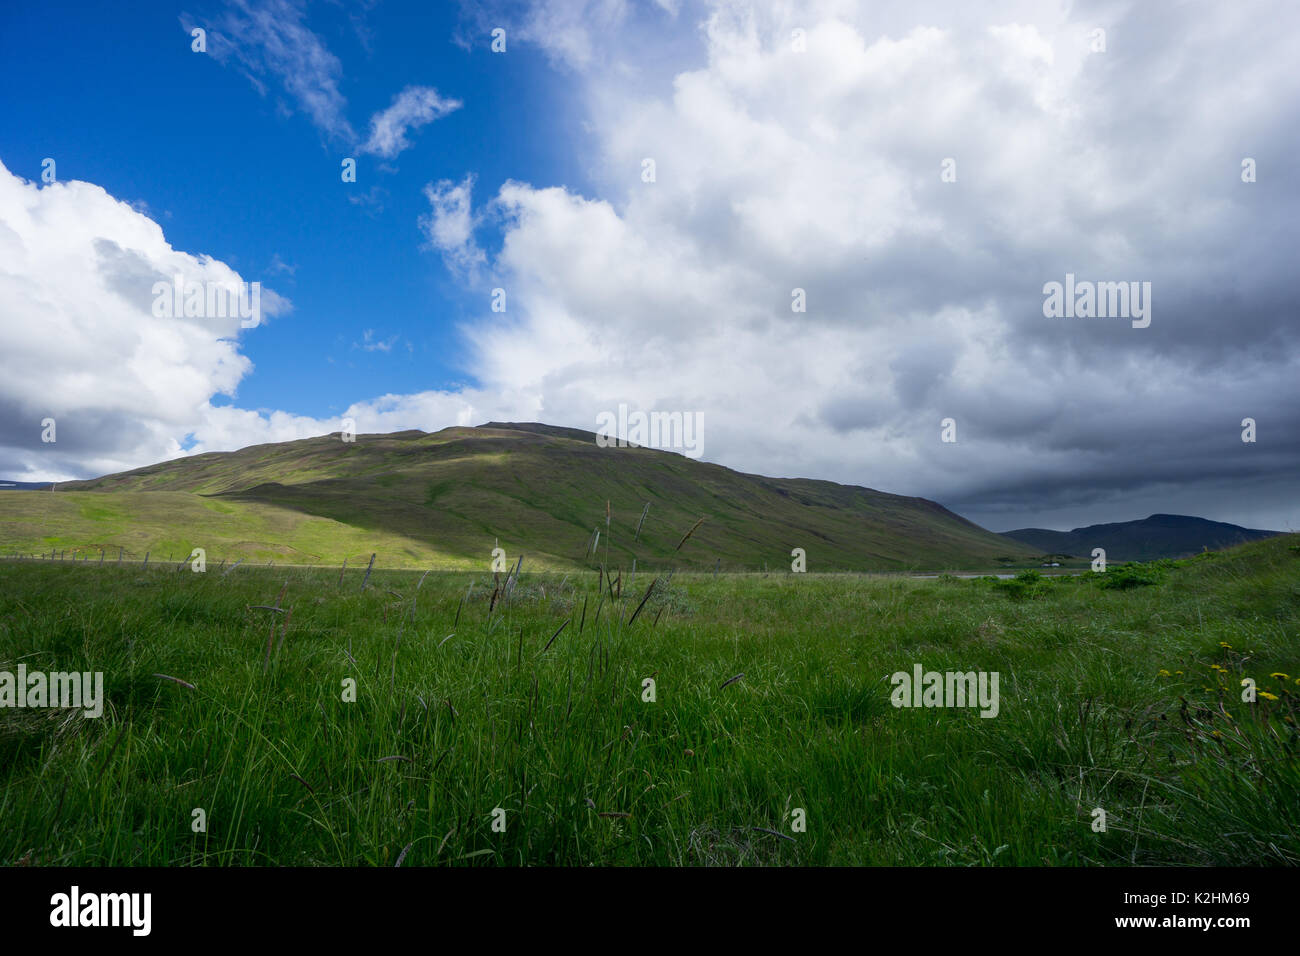 Island - dramatische Himmel als Gewitter kommt über endlose grüne Berge und Felder Stockfoto